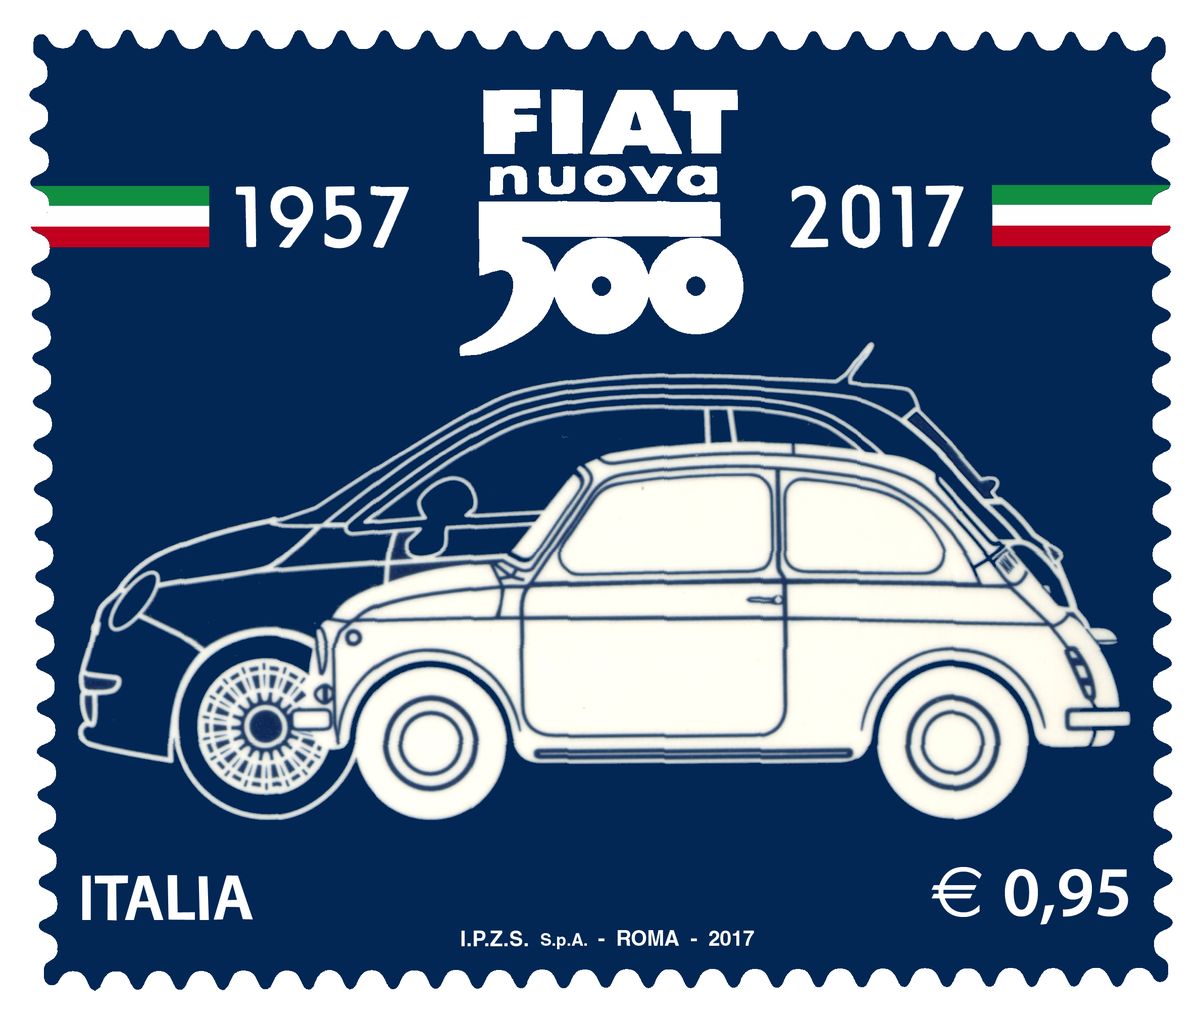 Italienische Post ehrt klassischen Fiat 500 mit eigener Briefmarke